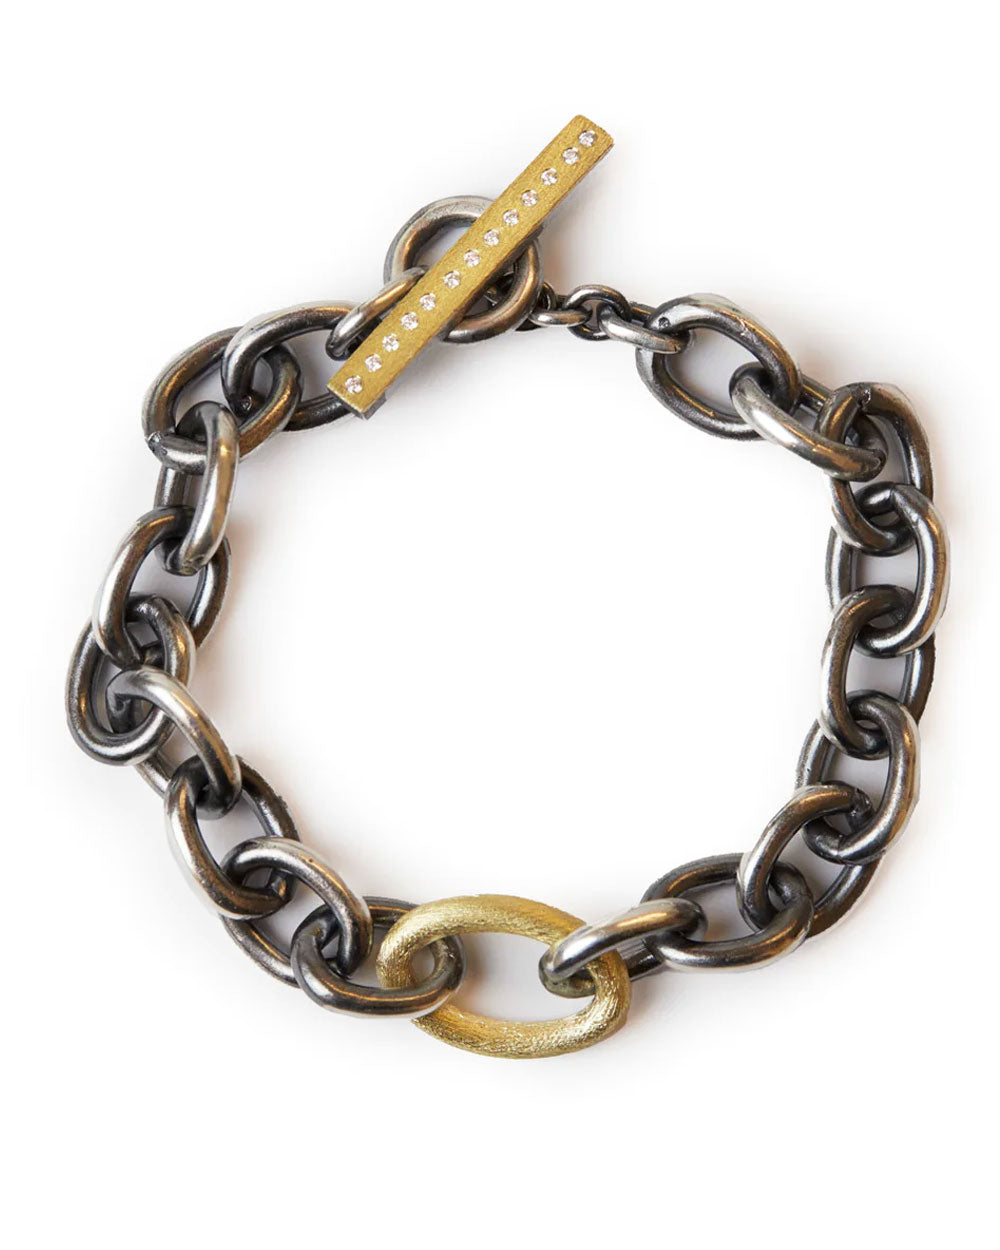 Diamond Center Link Chain Bracelet